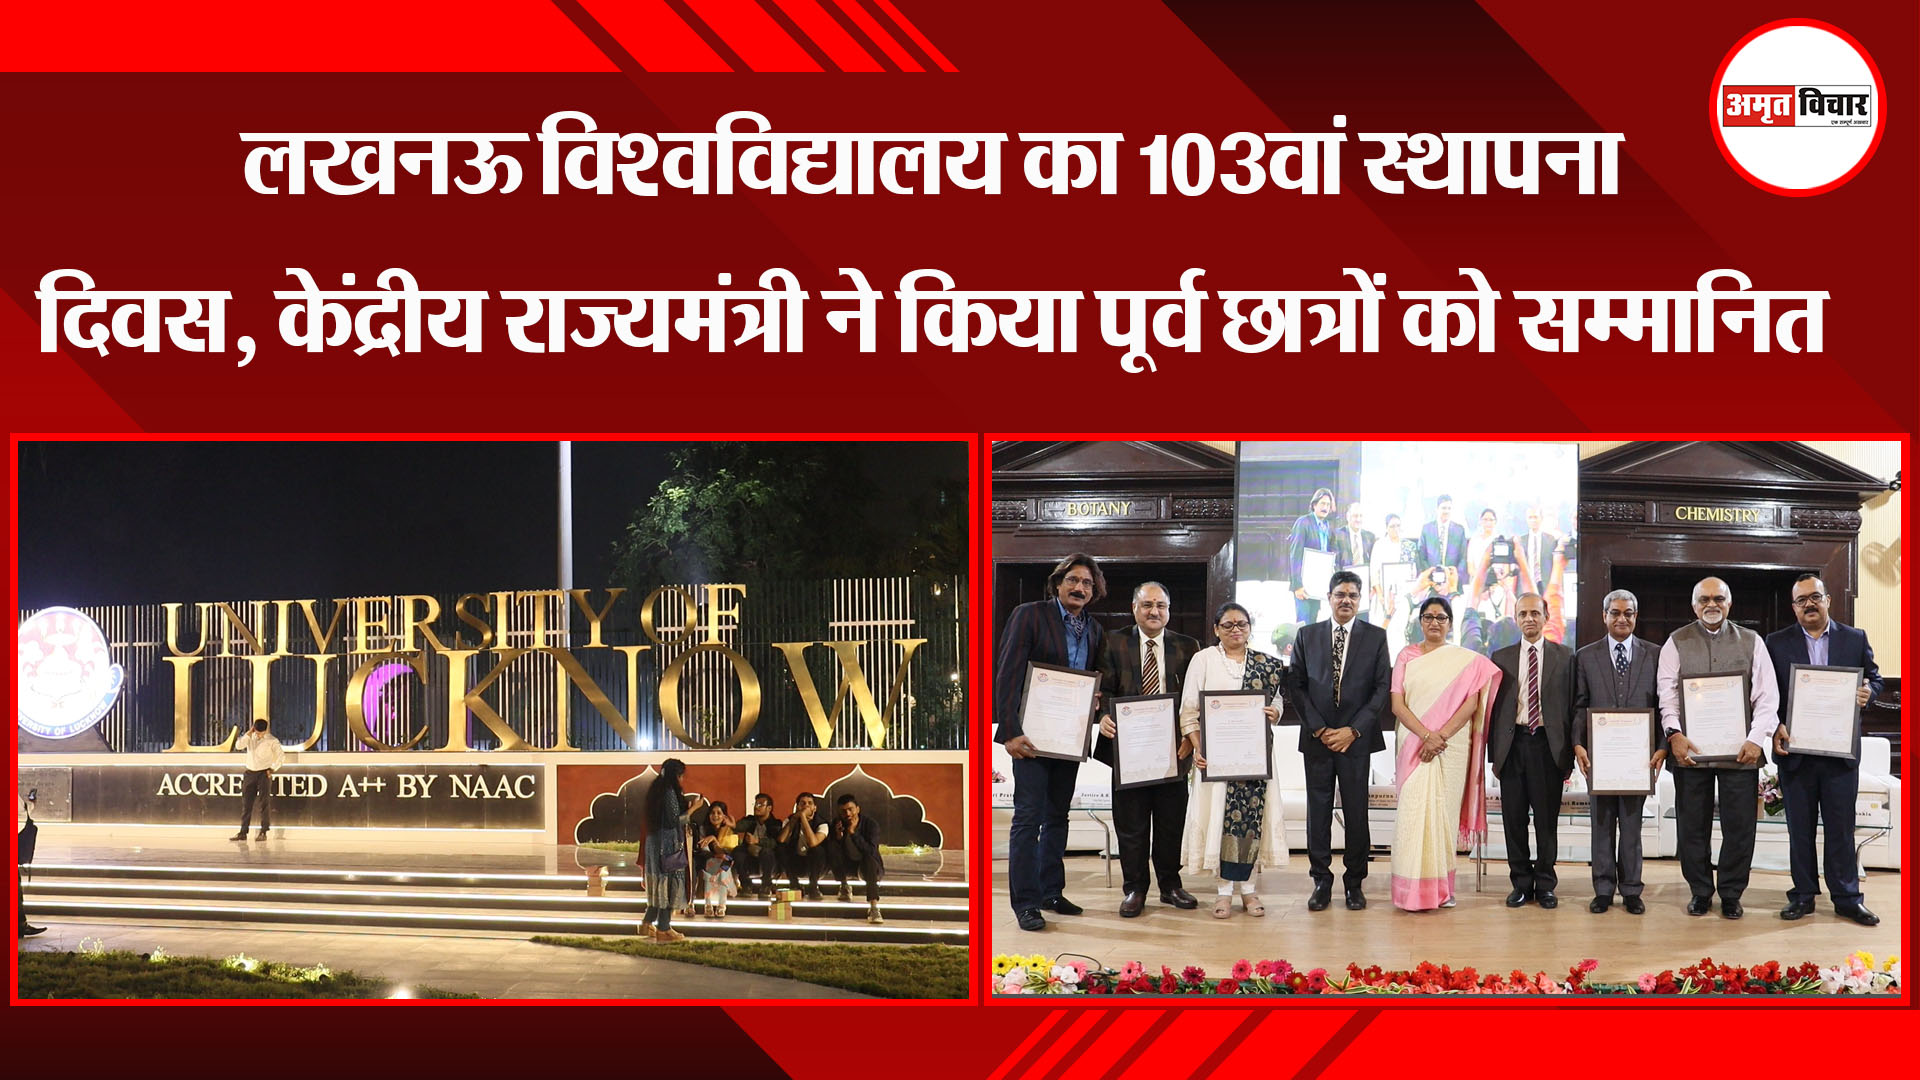 लखनऊ विश्वविद्यालय का 103वां स्थापना दिवस, केंद्रीय राज्यमंत्री ने किया पूर्व छात्रों को सम्मानित